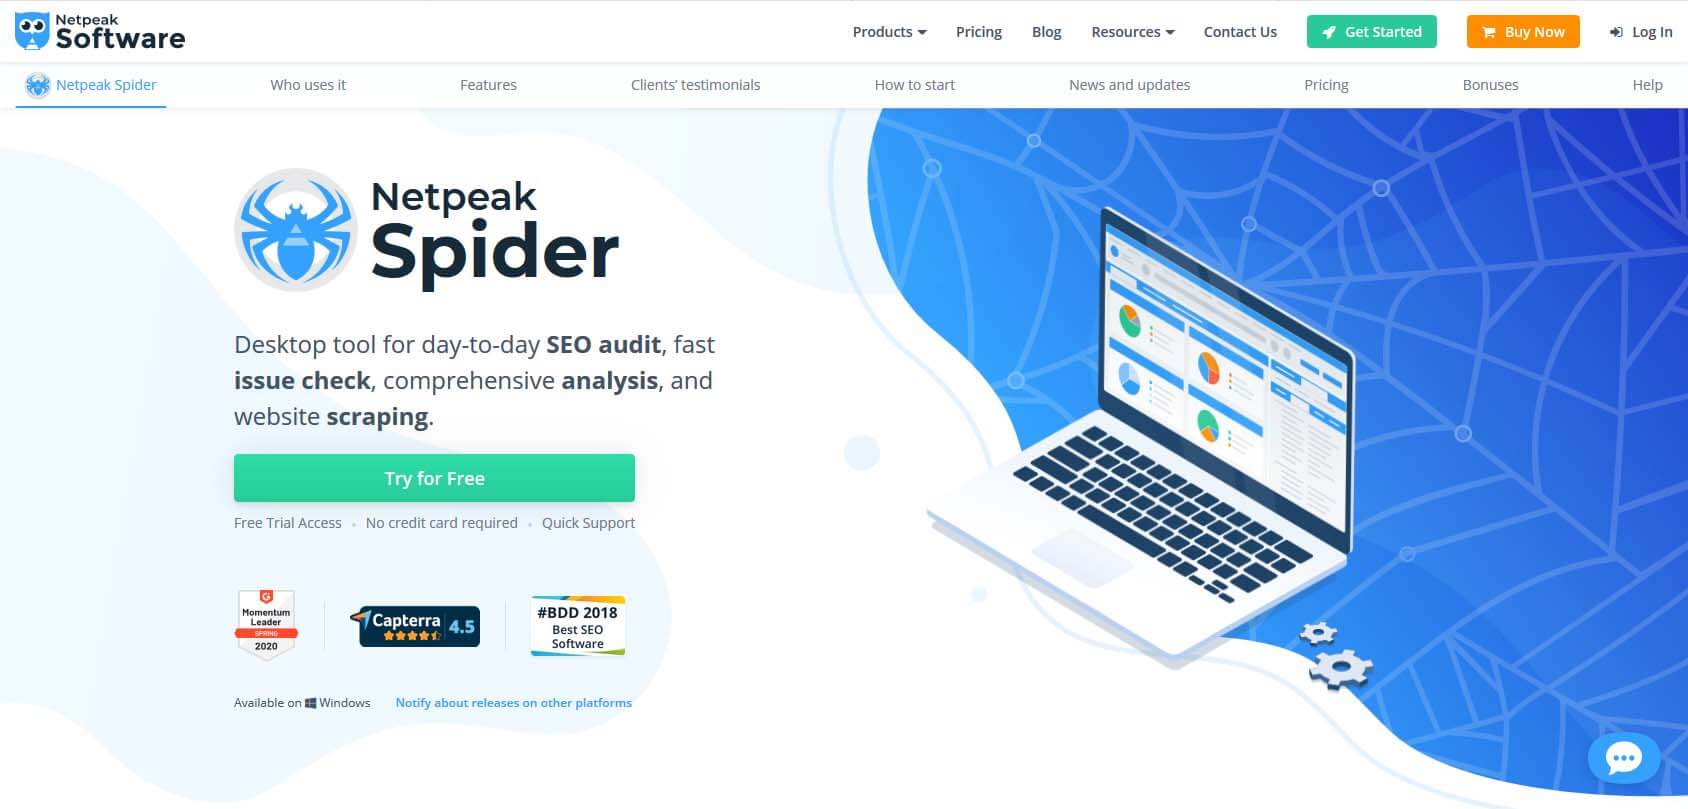 Netpeak Spider homepage